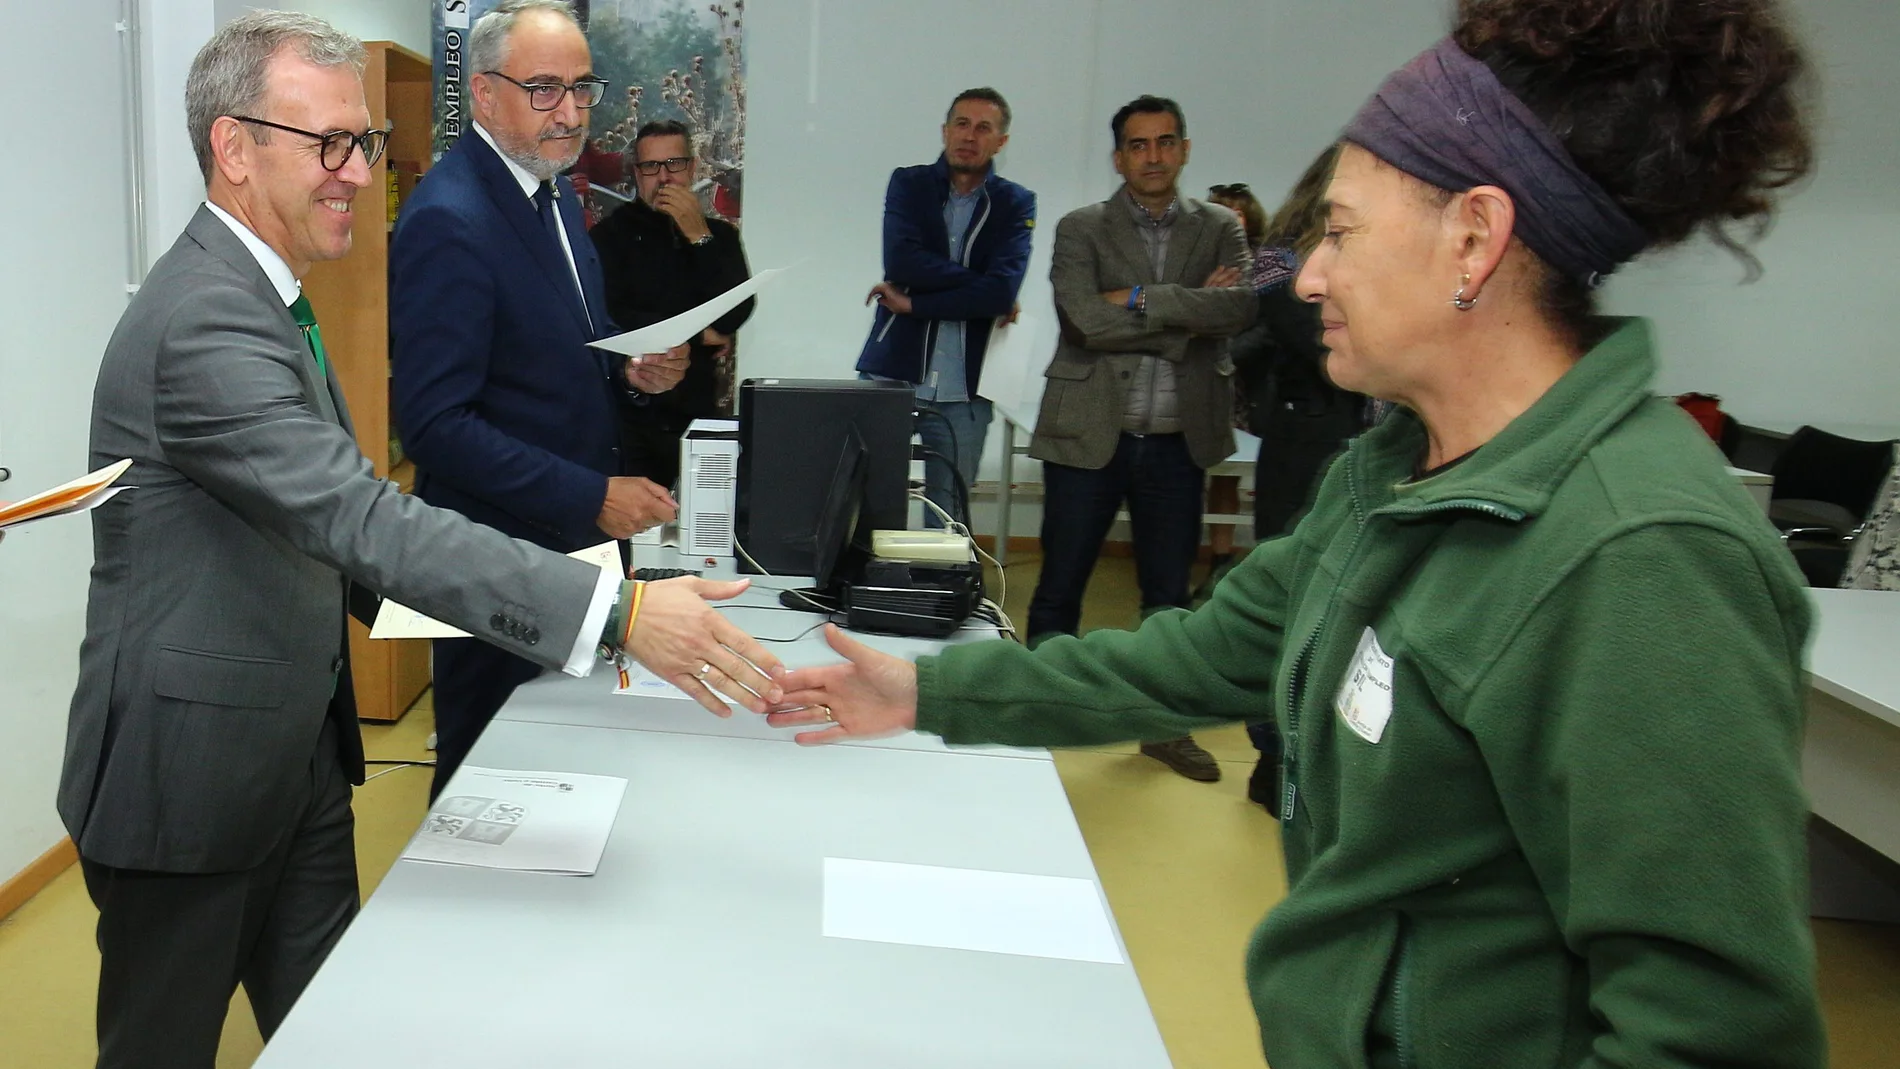 El consejero de Industria, Comercio y Empleo, Mariano Veganzones, entrega uno de los diplomas a una alumna que se ha formado en uno de estos talleres duales de empleo en Ponferrada